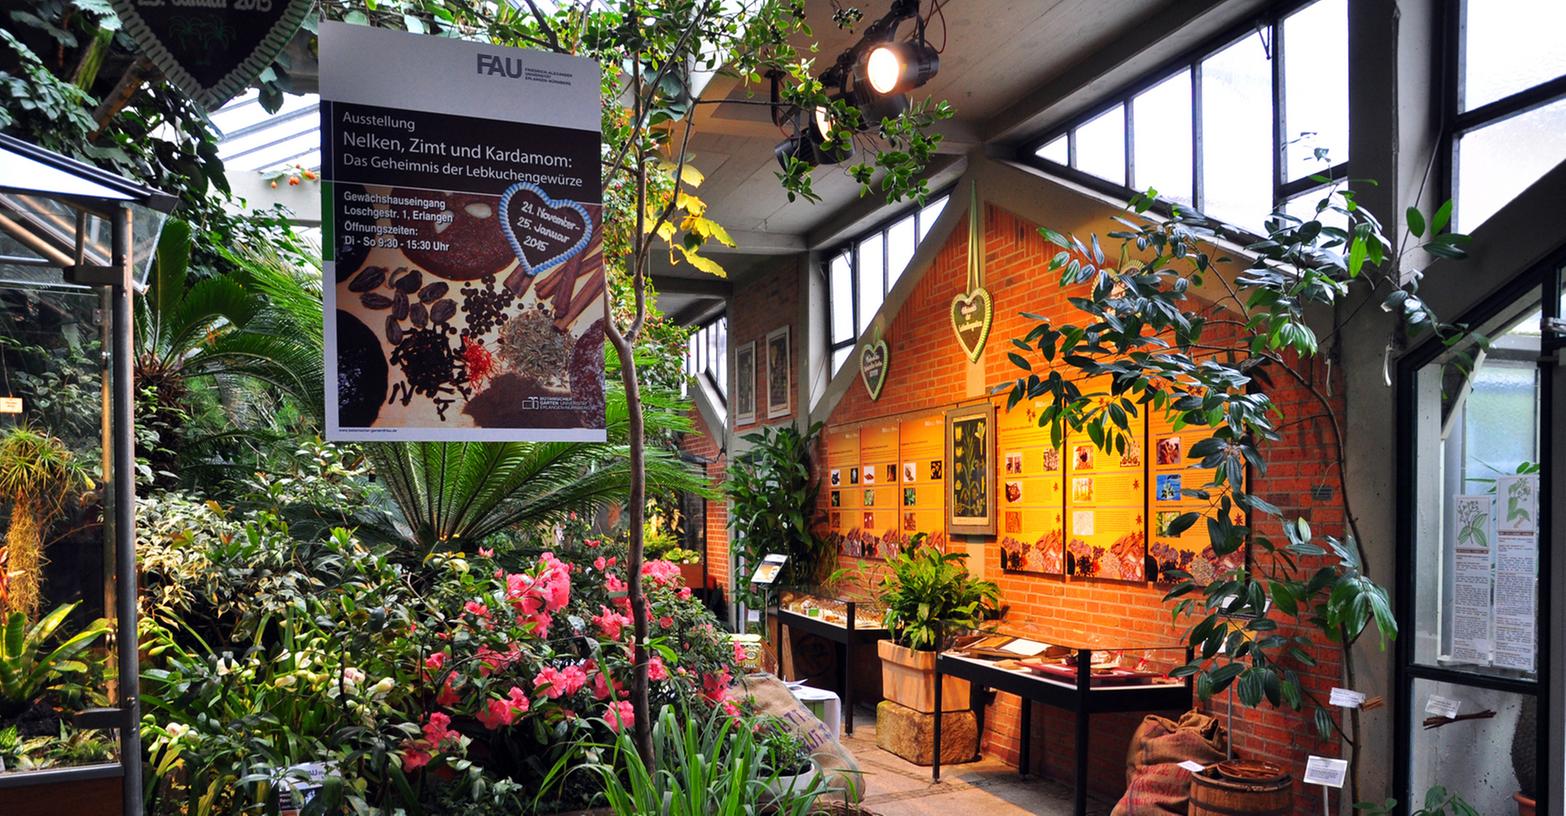 Die Ausstellung "Nelken, Zimt und Kardamom" im Botanischen Garten in Erlangen verrät so manches über geheimnisvolle Düfte aus aller Welt.